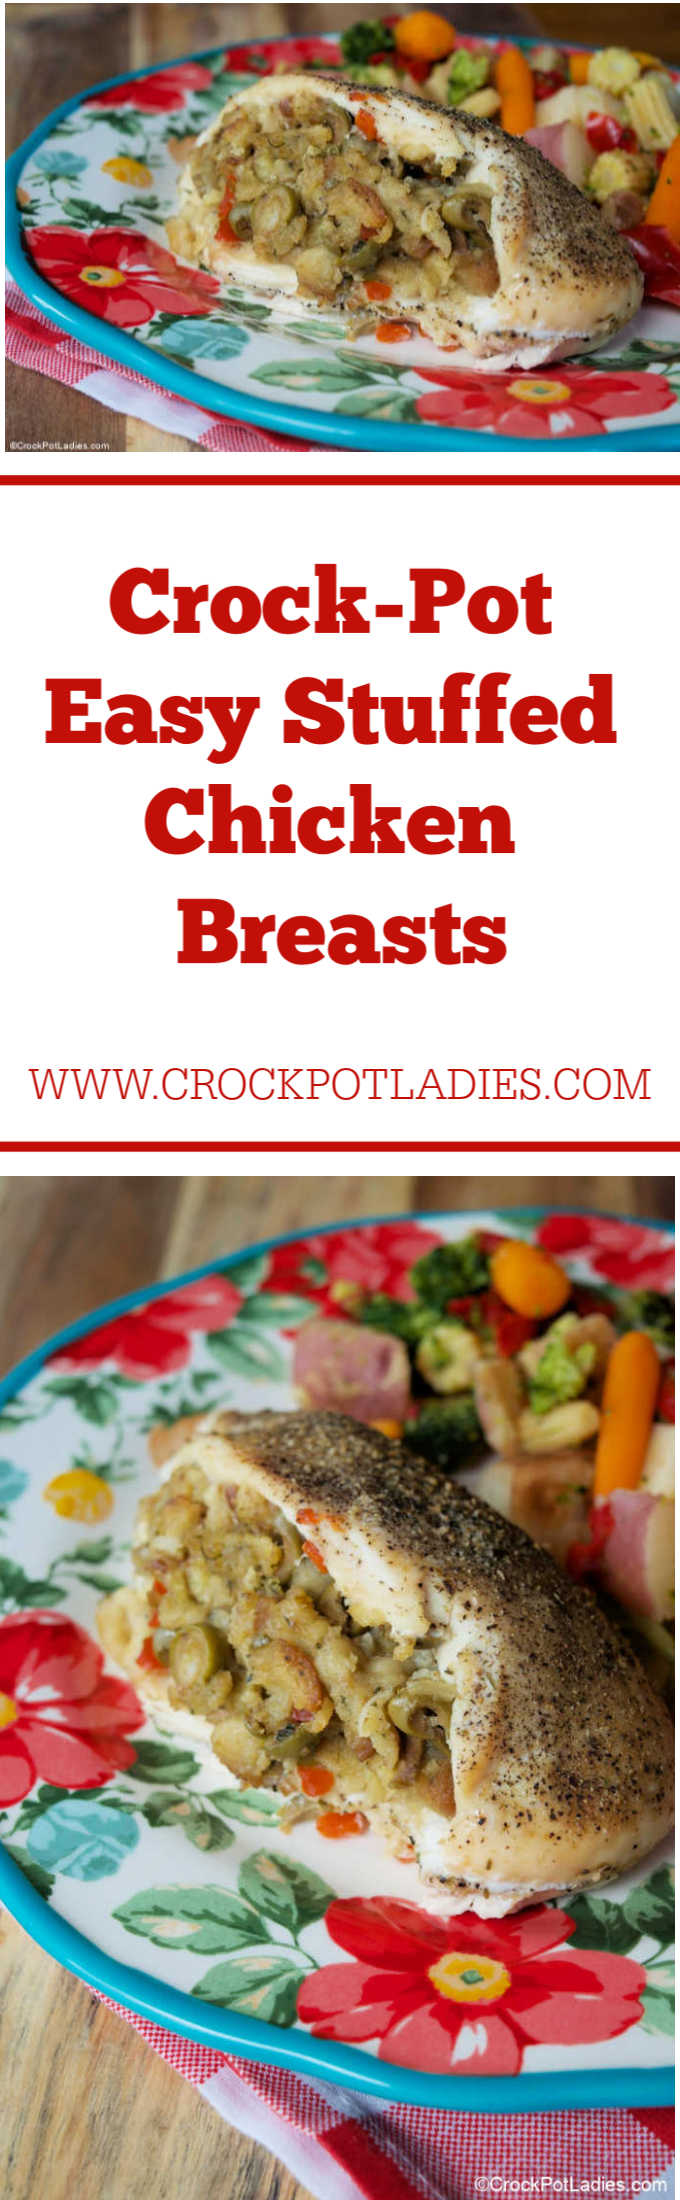 Crock-Pot Easy Stuffed Chicken Breasts